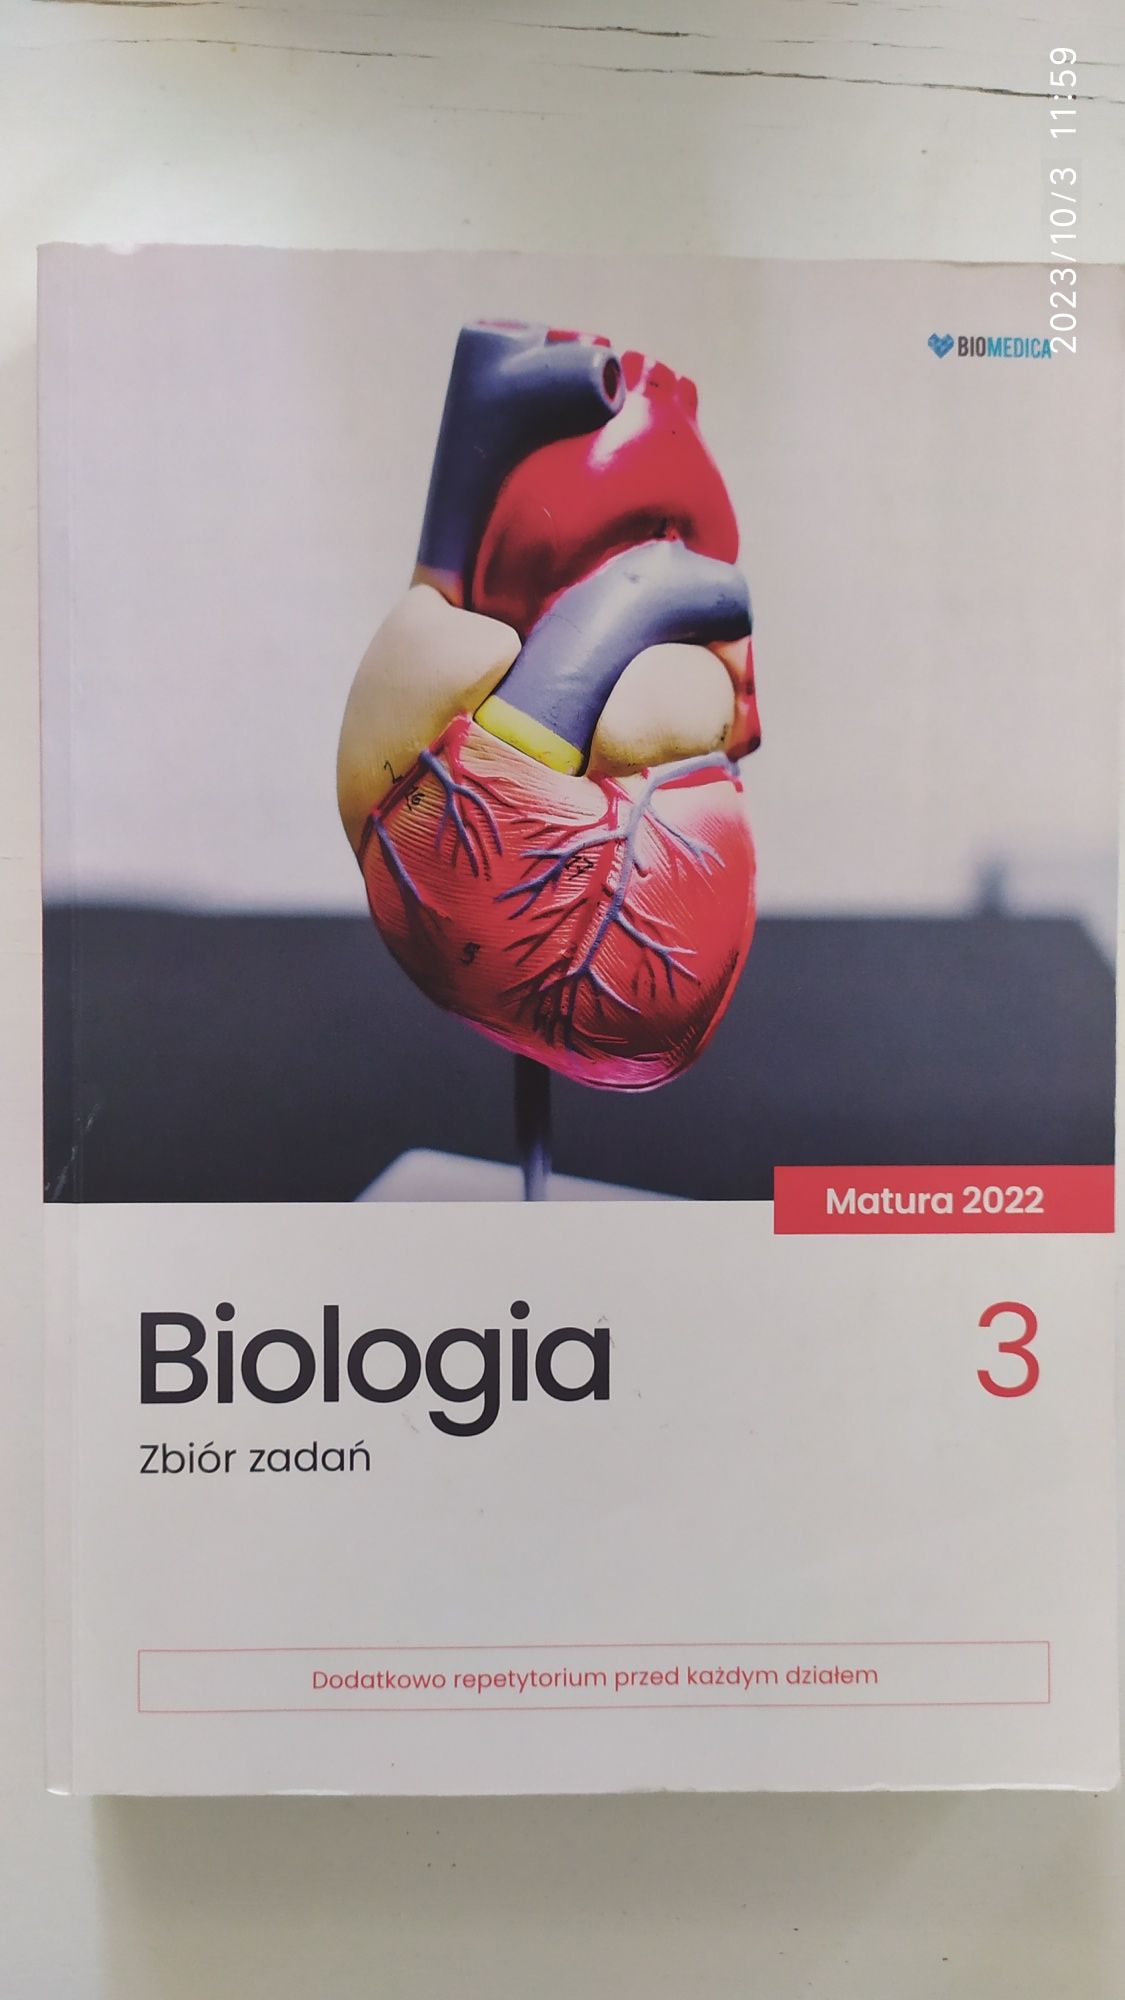 350. Biomedica Matura Biologia zbiór zadań repetytorium 3